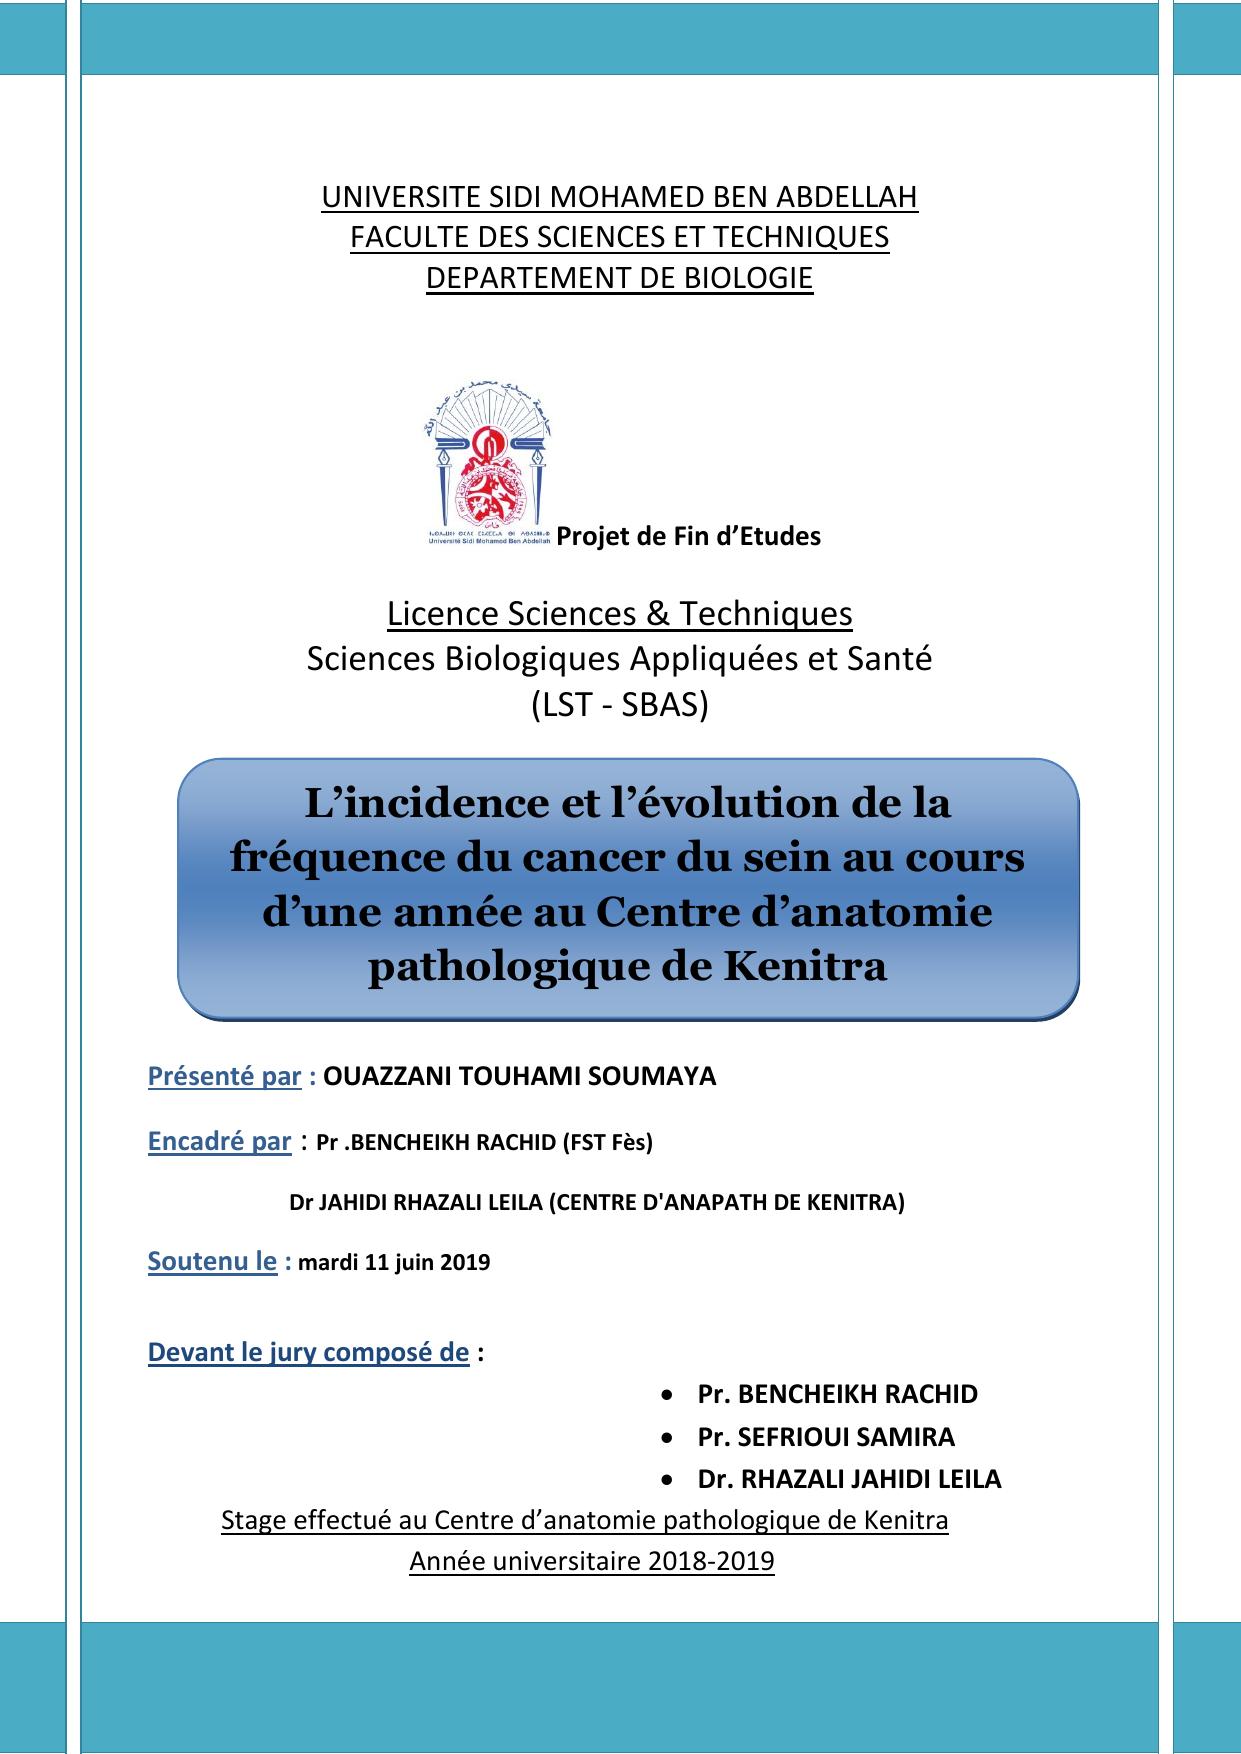 L’incidence et l’évolution de la fréquence du cancer du sein au cours d’une année au Centre d’anatomie pathologique de Kenitra